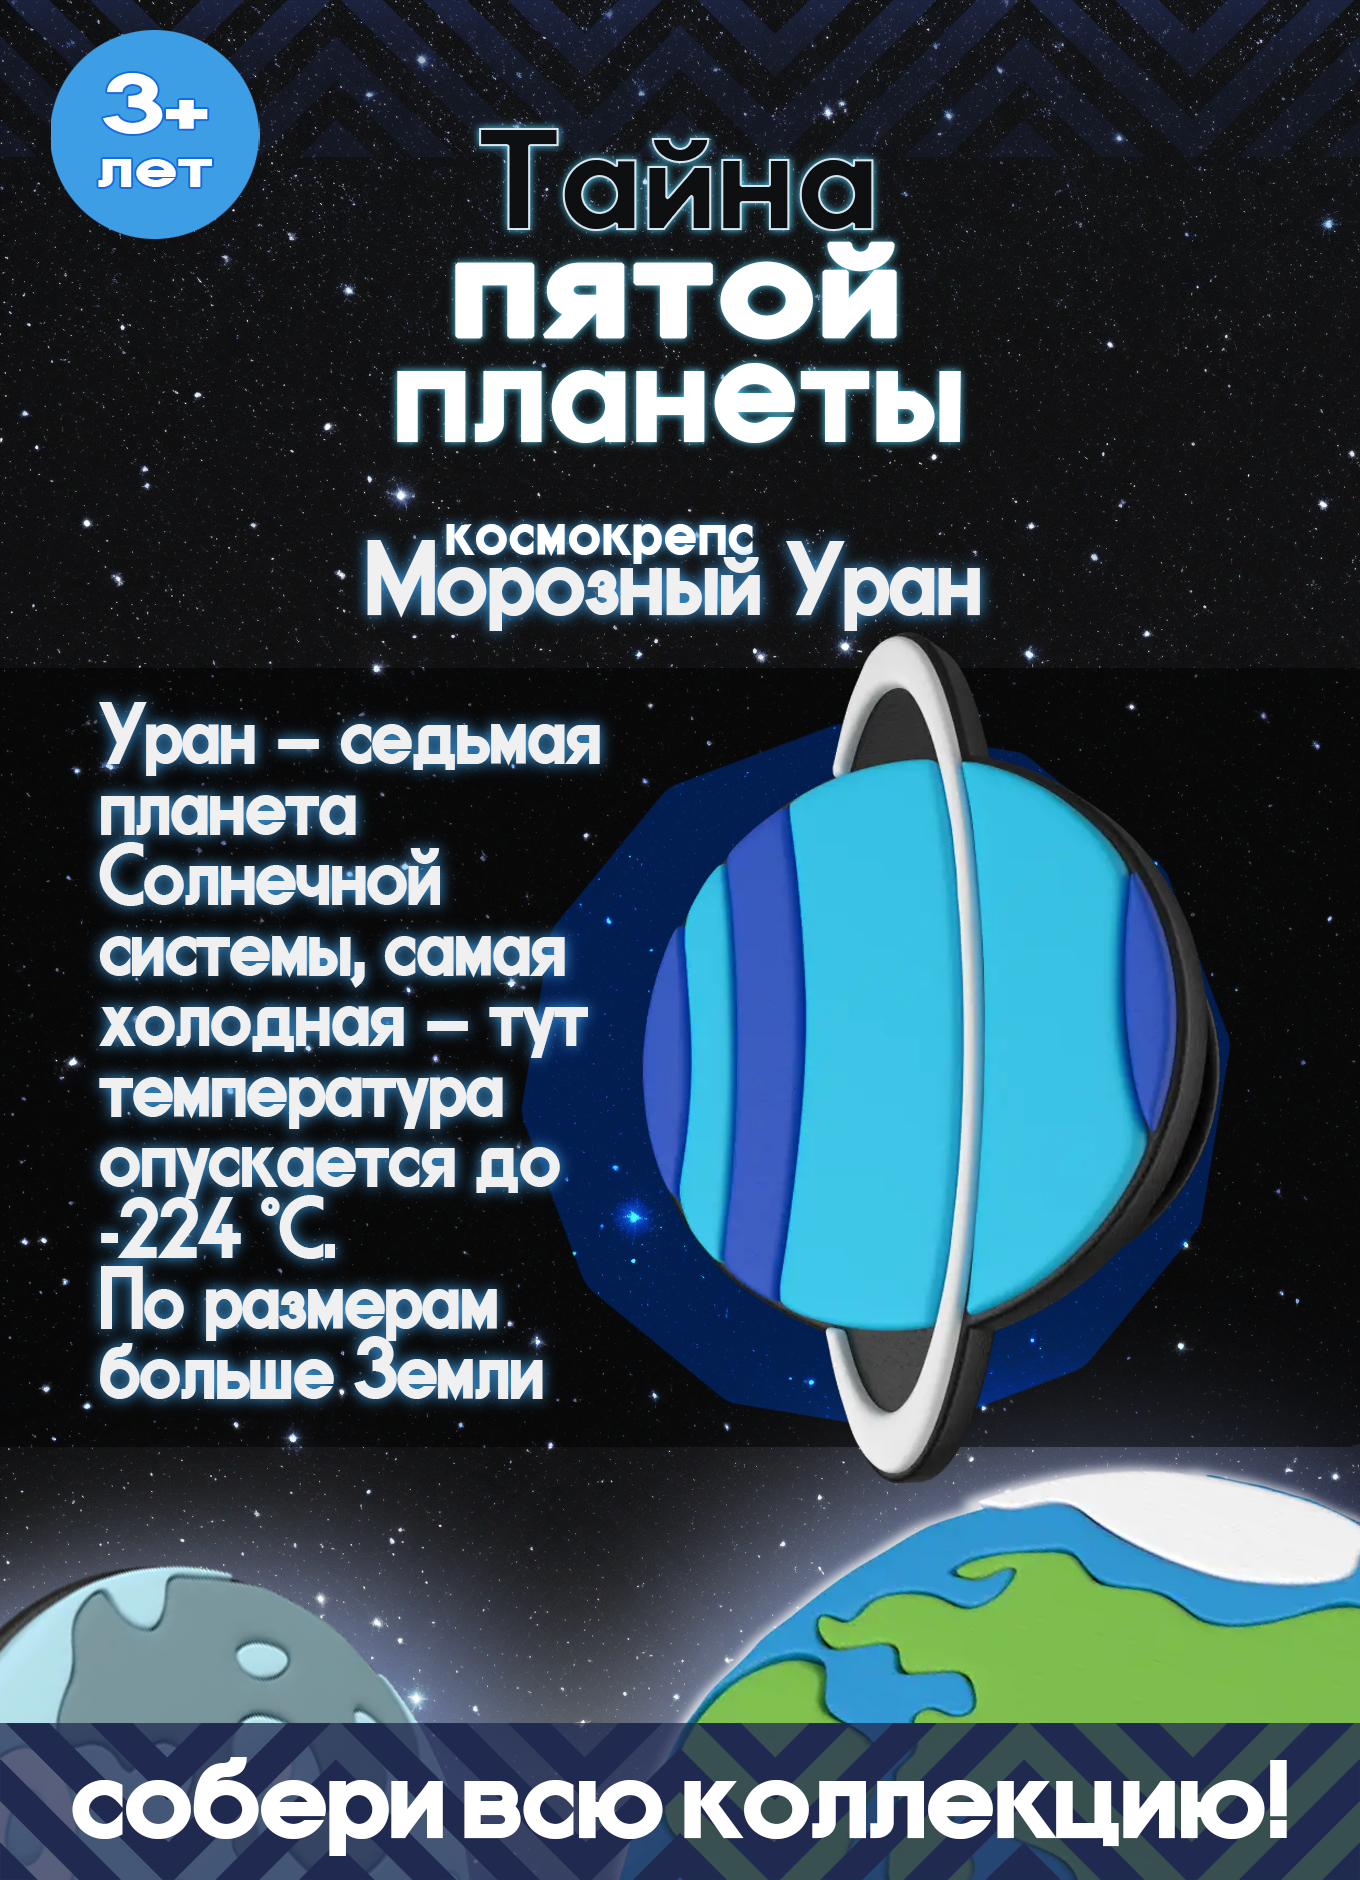 Пятерочка Тайна пятой планеты Космокрепс Морозный Уран